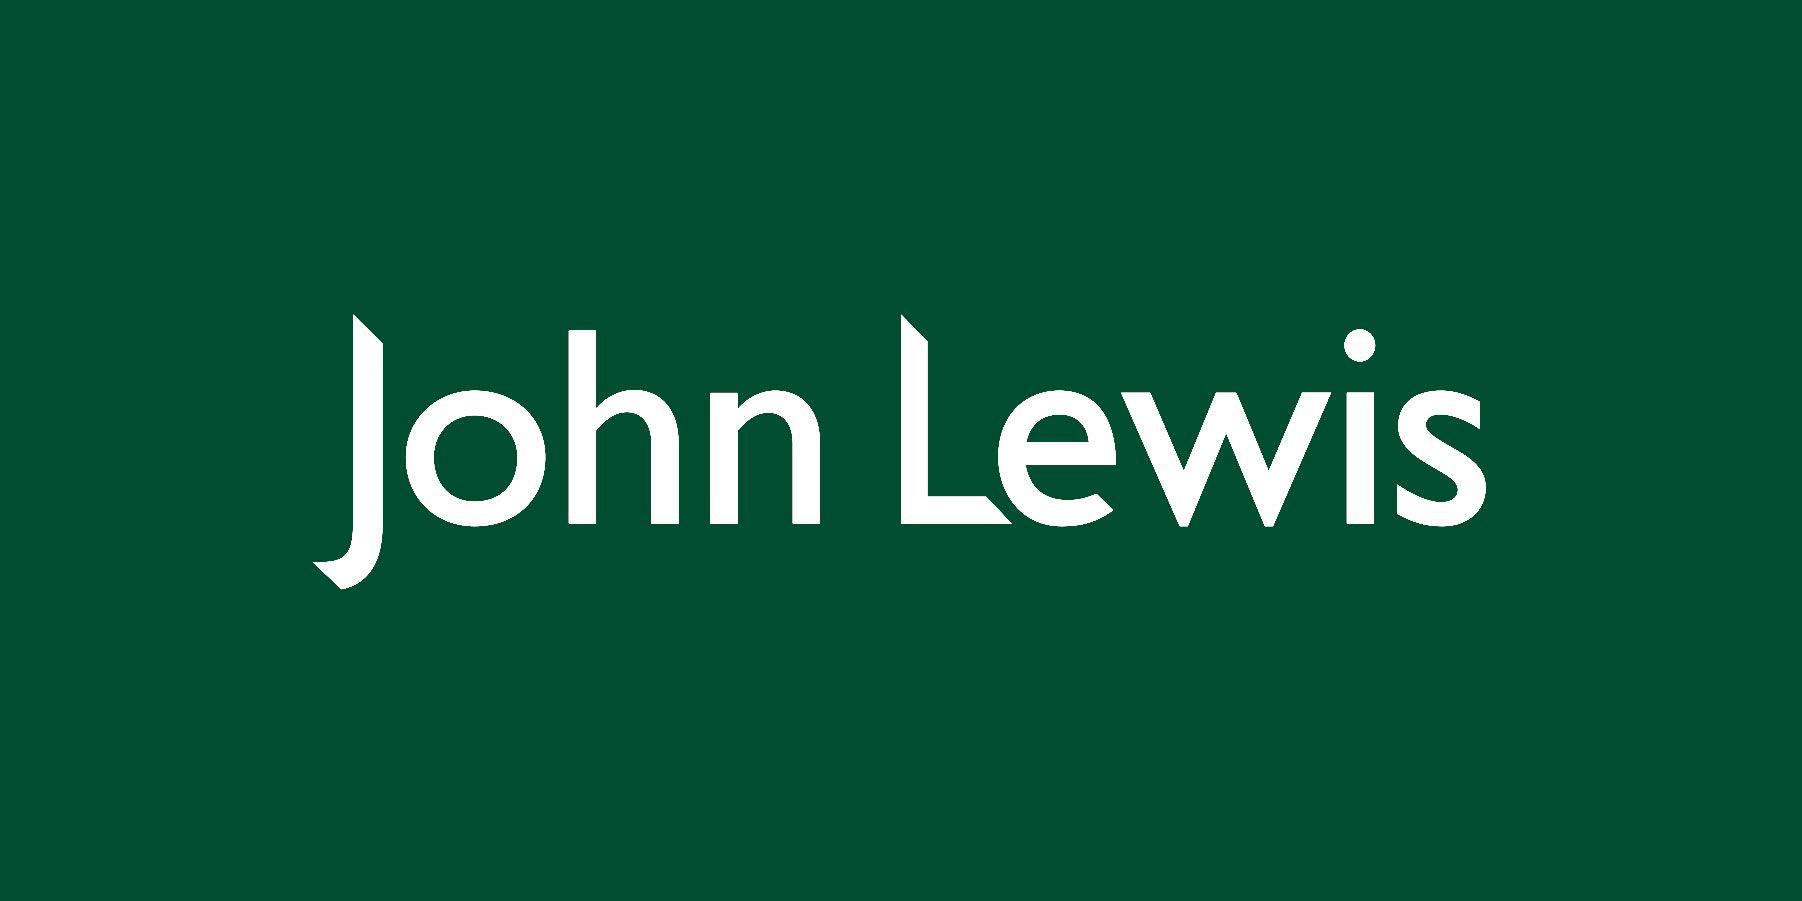 Lewis Logo - John Lewis